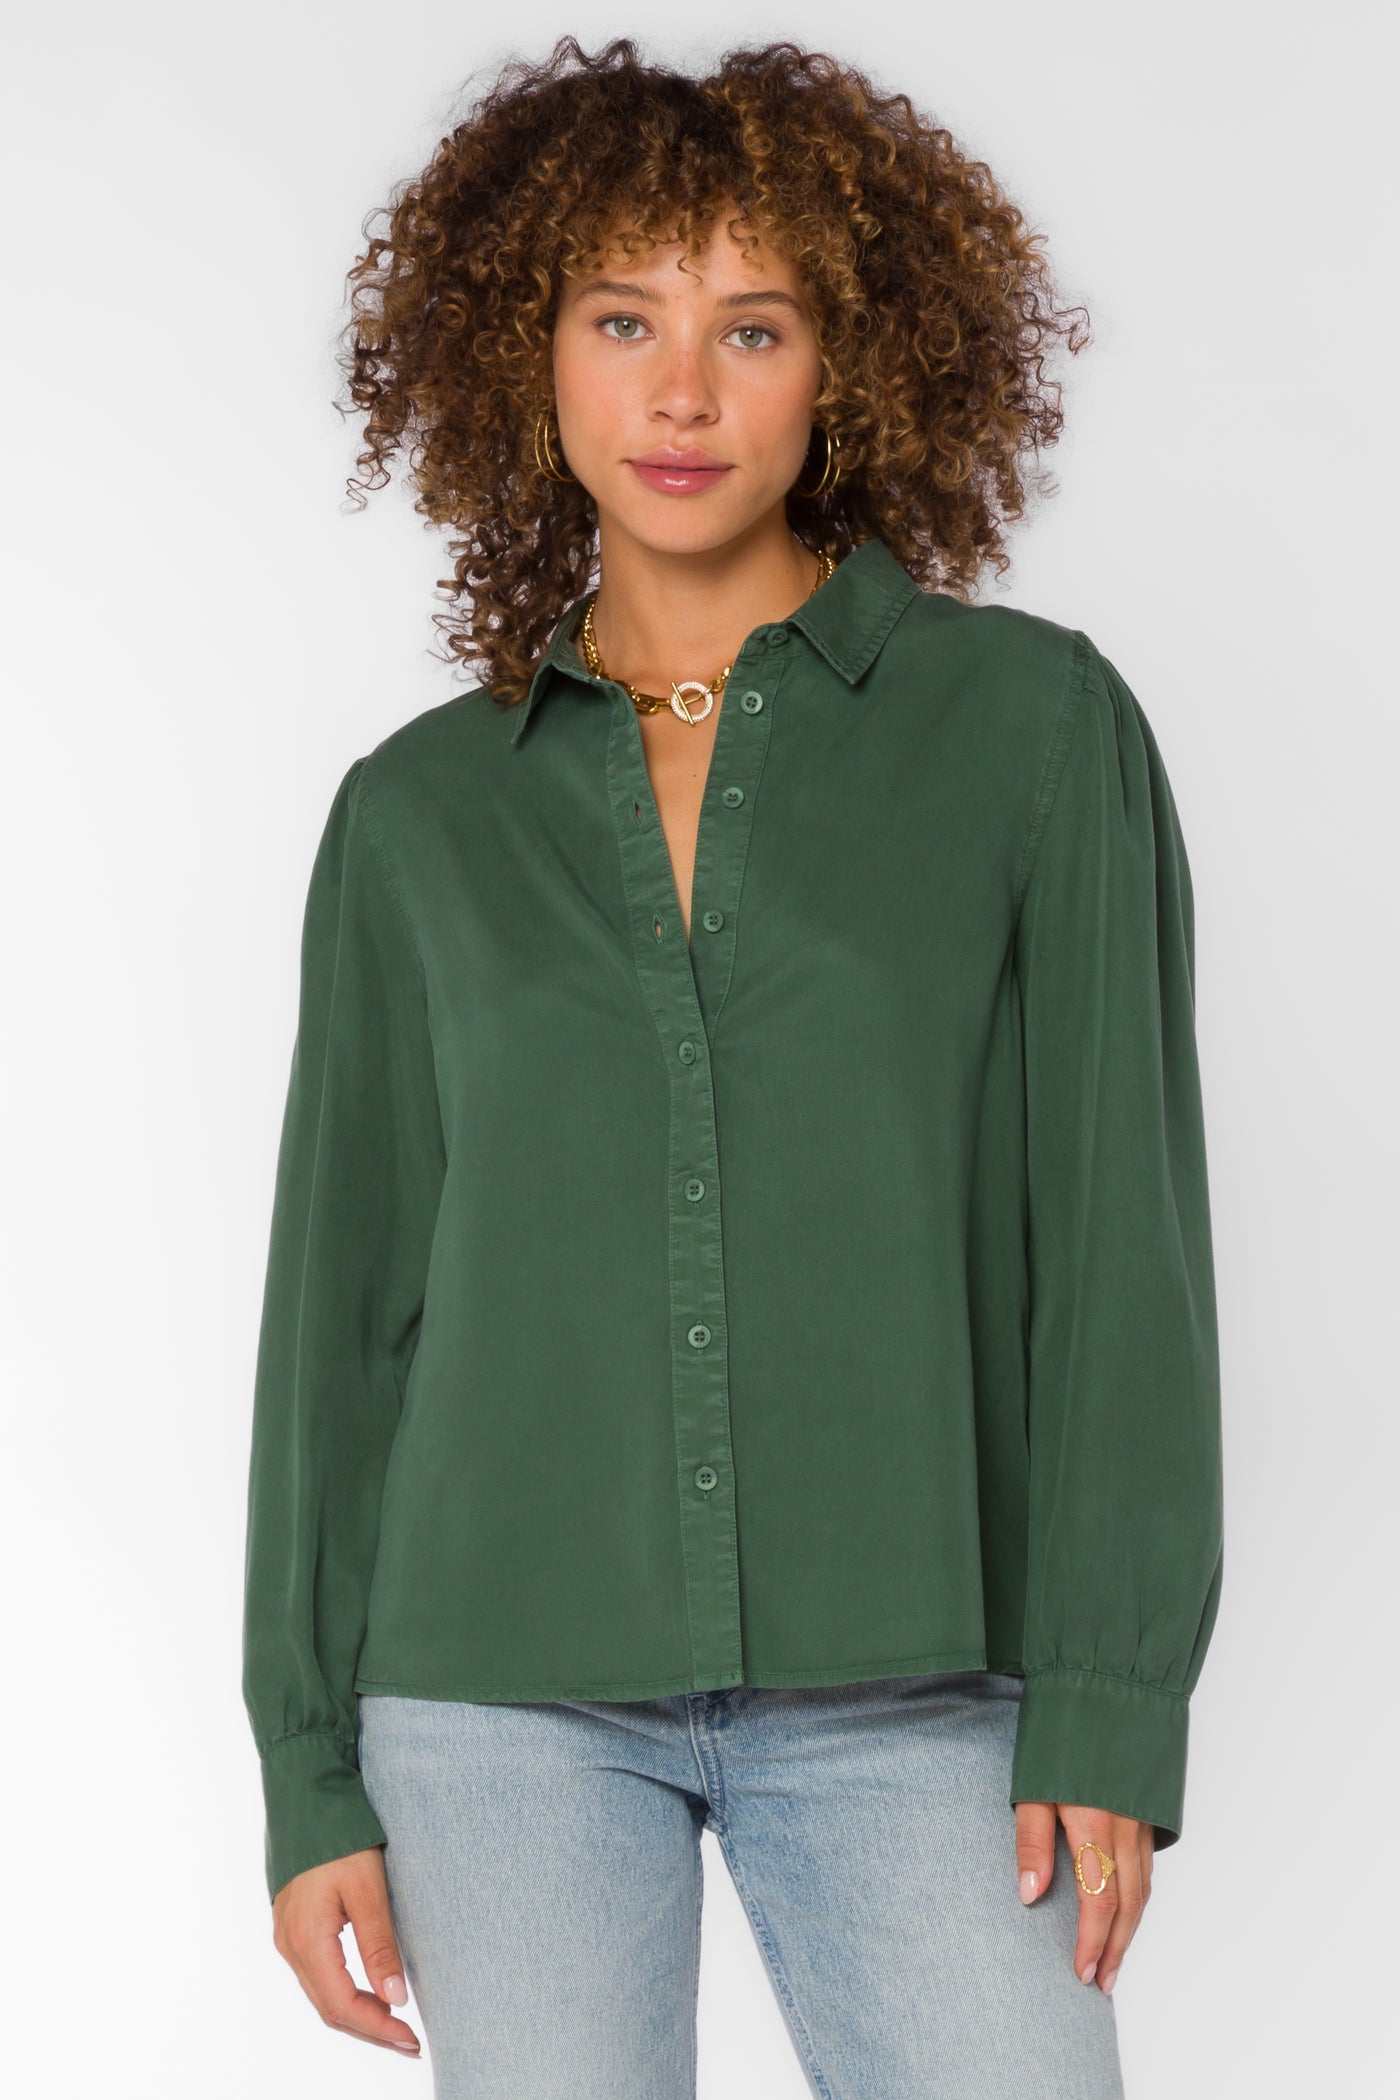 Bellamy Dark Green Shirt - Tops - Velvet Heart Clothing